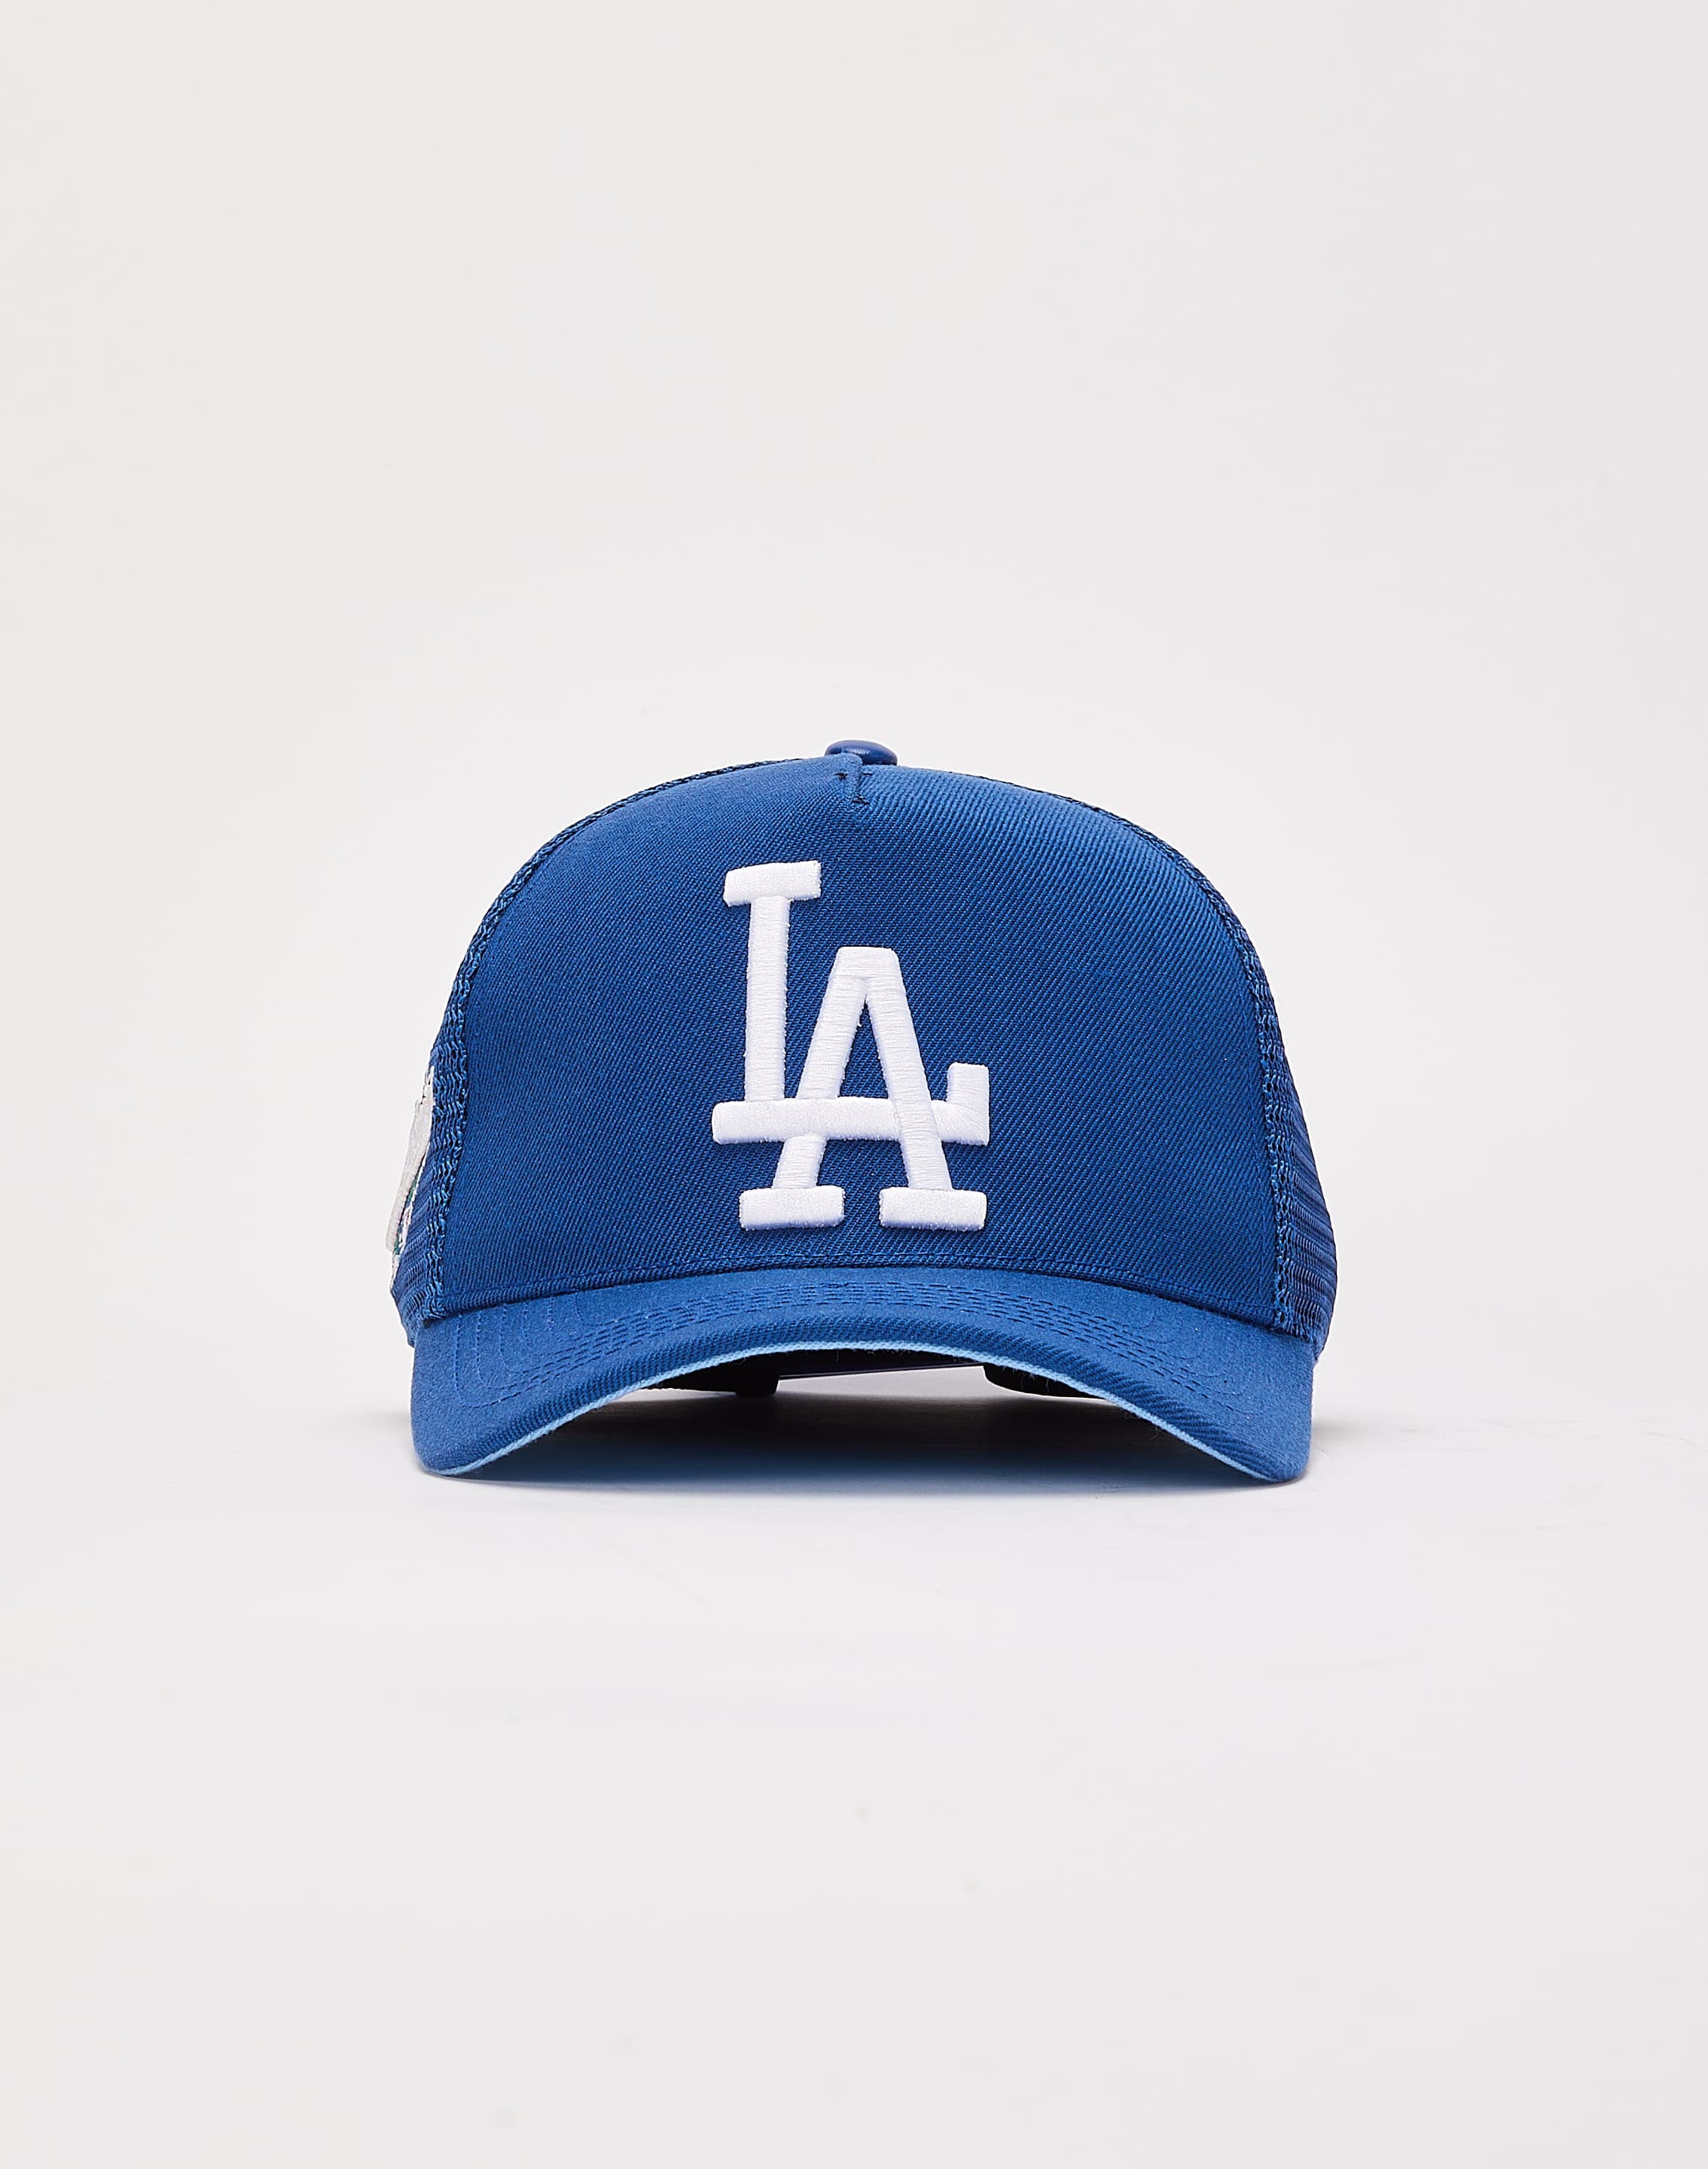 Pro Standard Los Angeles Dodgers Trucker Hat